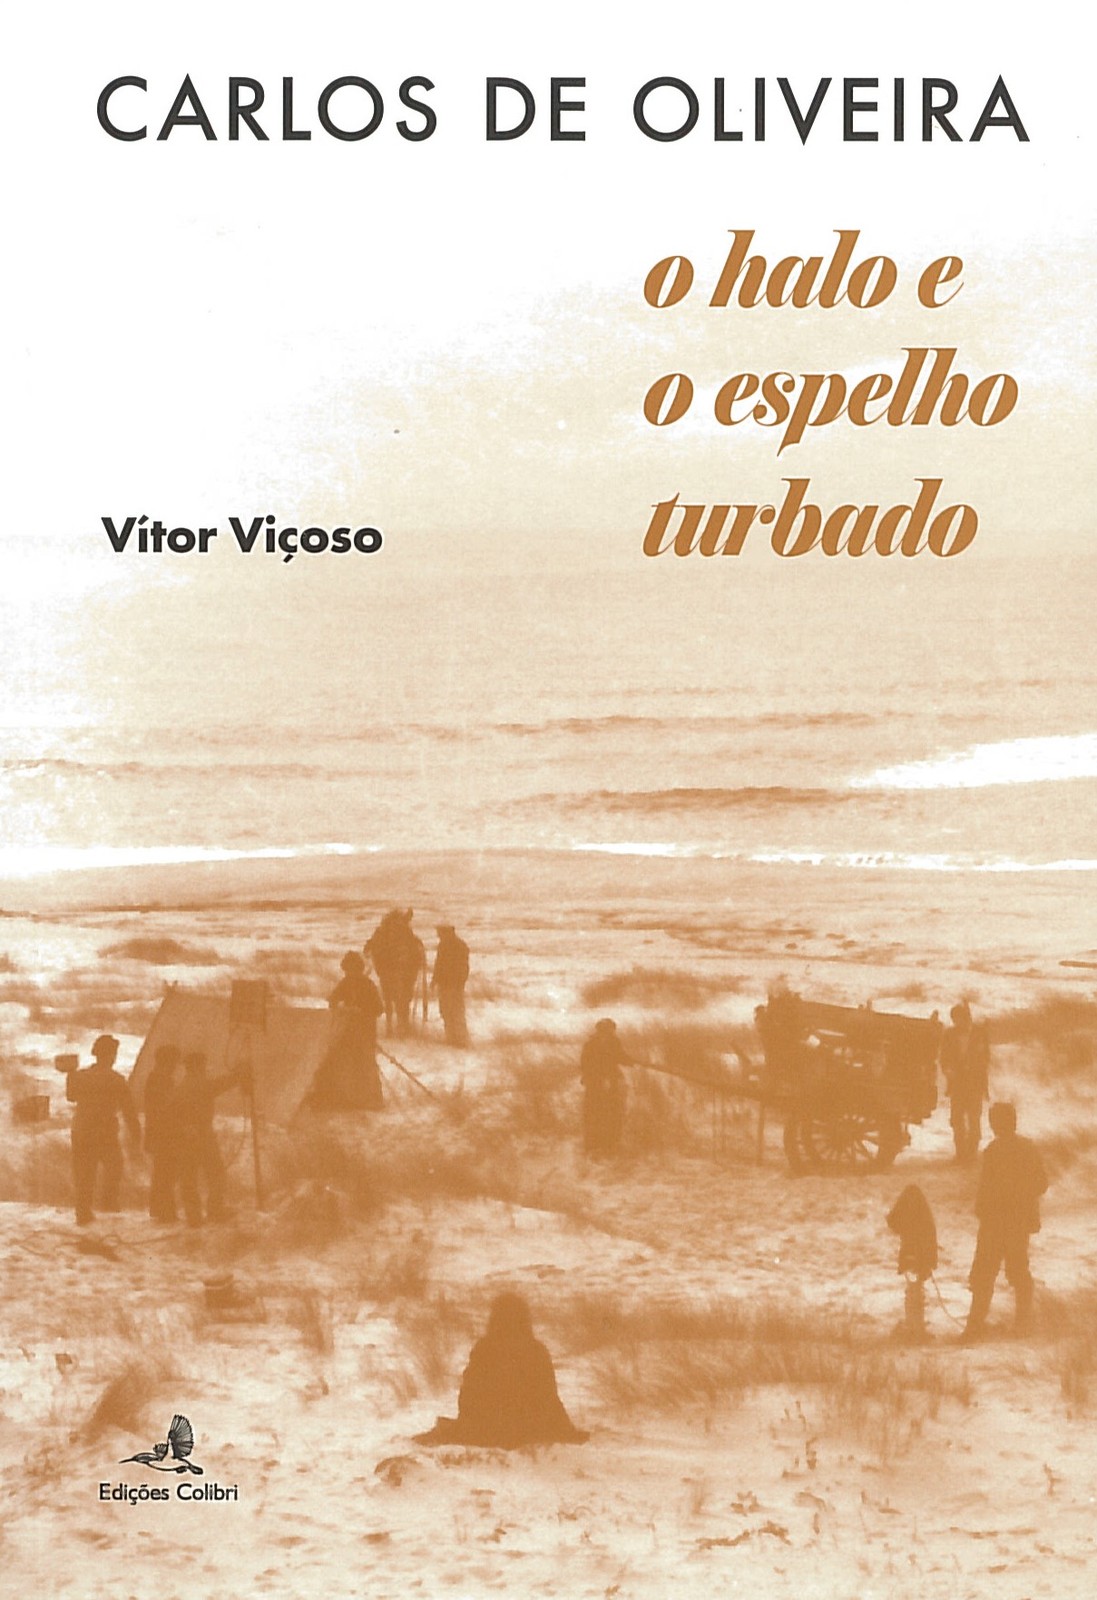 Vítor Viçoso - Carlos de Oliveira: o halo e o espelho turbado